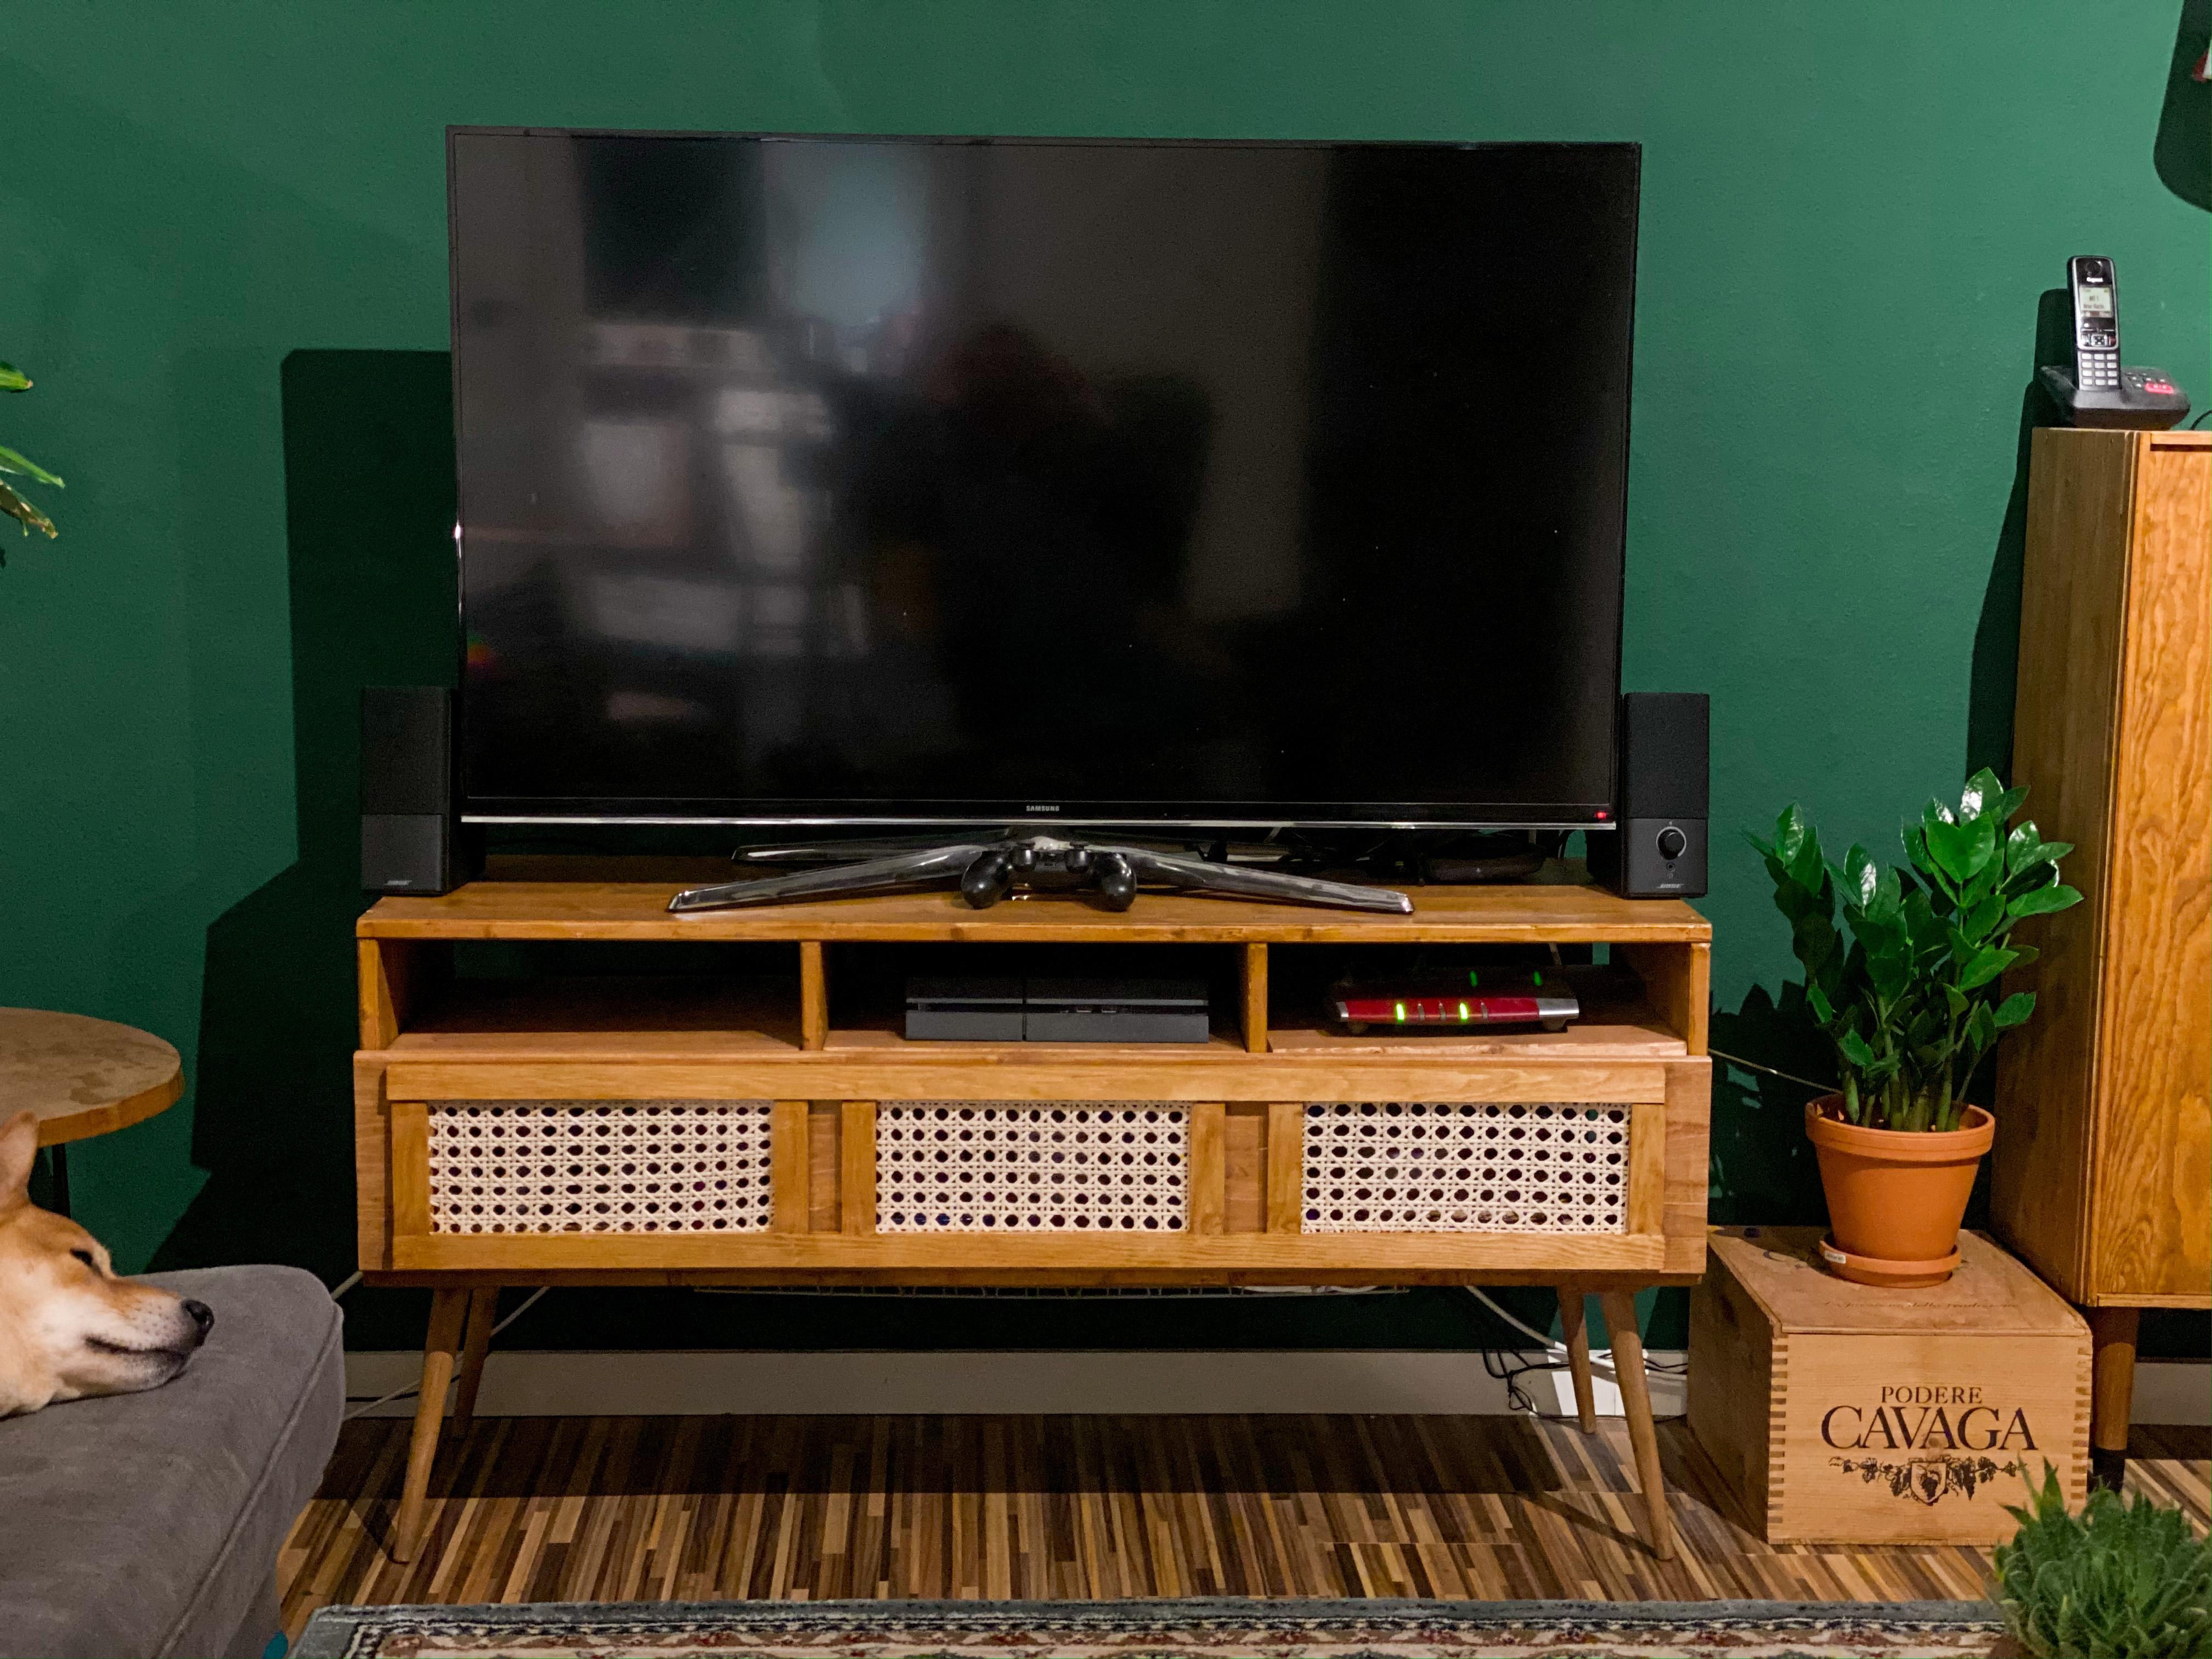 #diymöbel meine selbstgebaute tv Bank☺️ Selbstgeflochten dank Youtube Anleitung. Dem Hund gefällt sie auch 😀